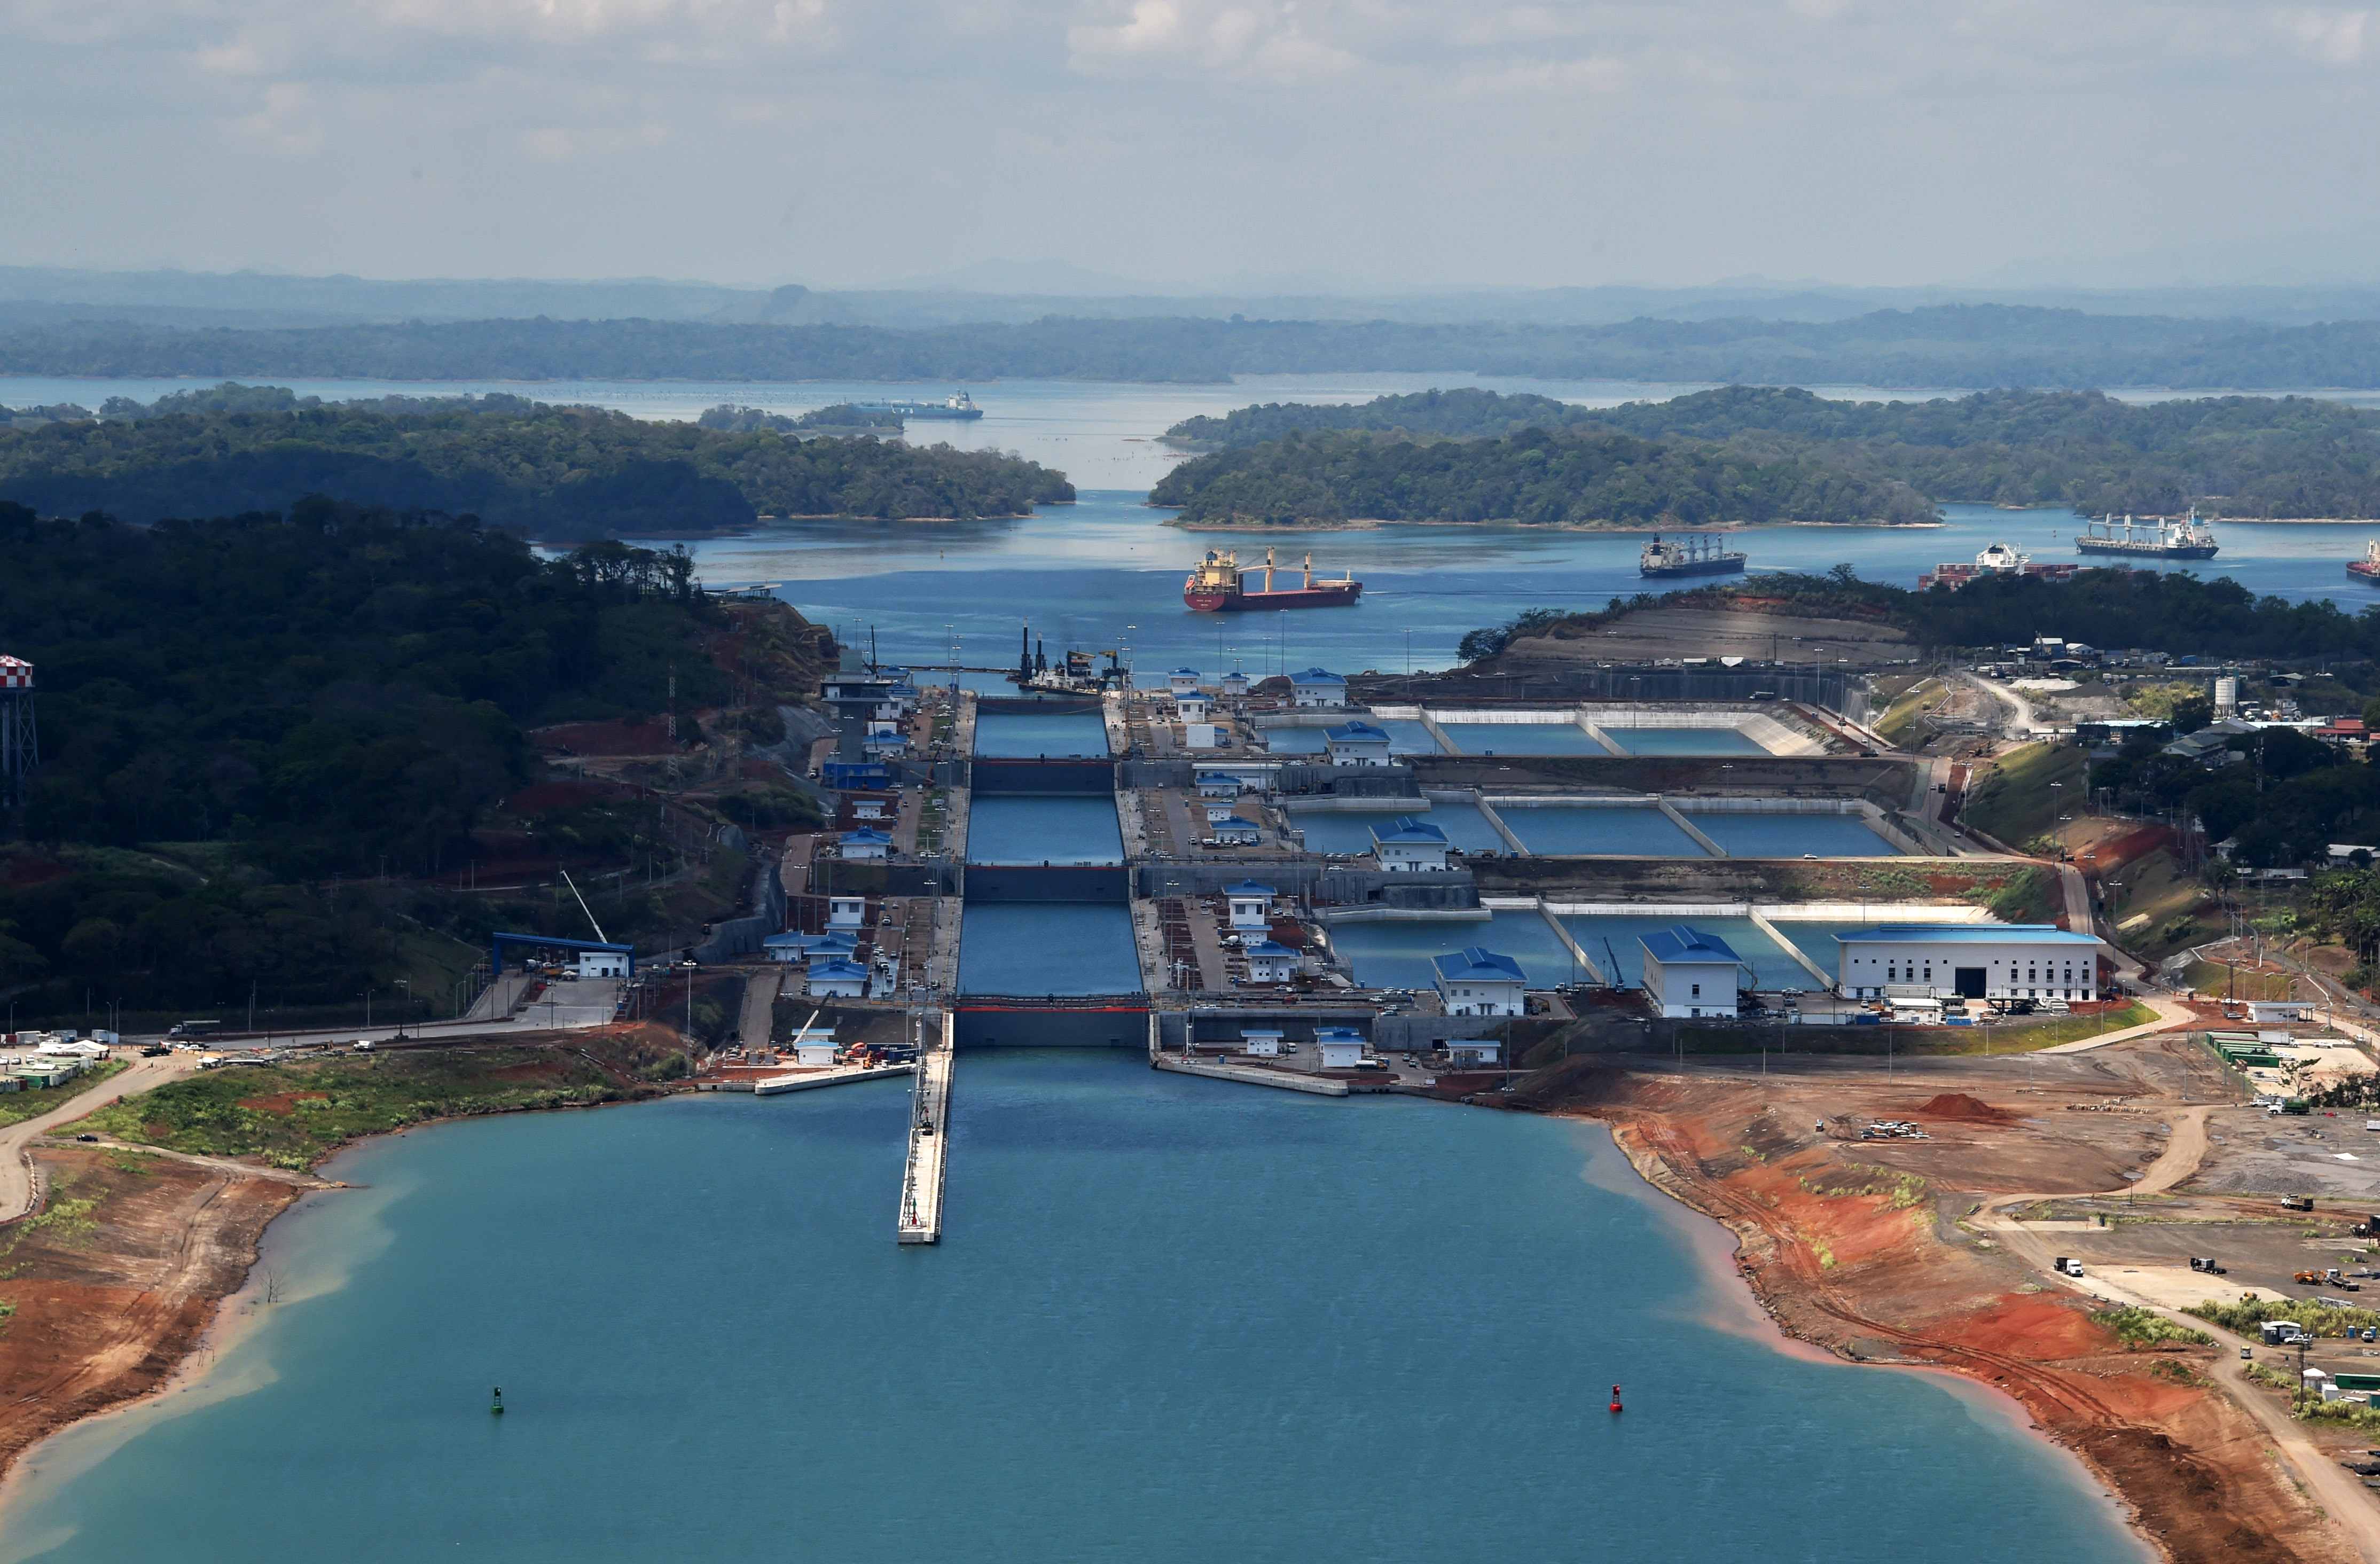 Annyira száraz a Panama-csatorna környéke, hogy pótdíjat kell szedni a hajóktól